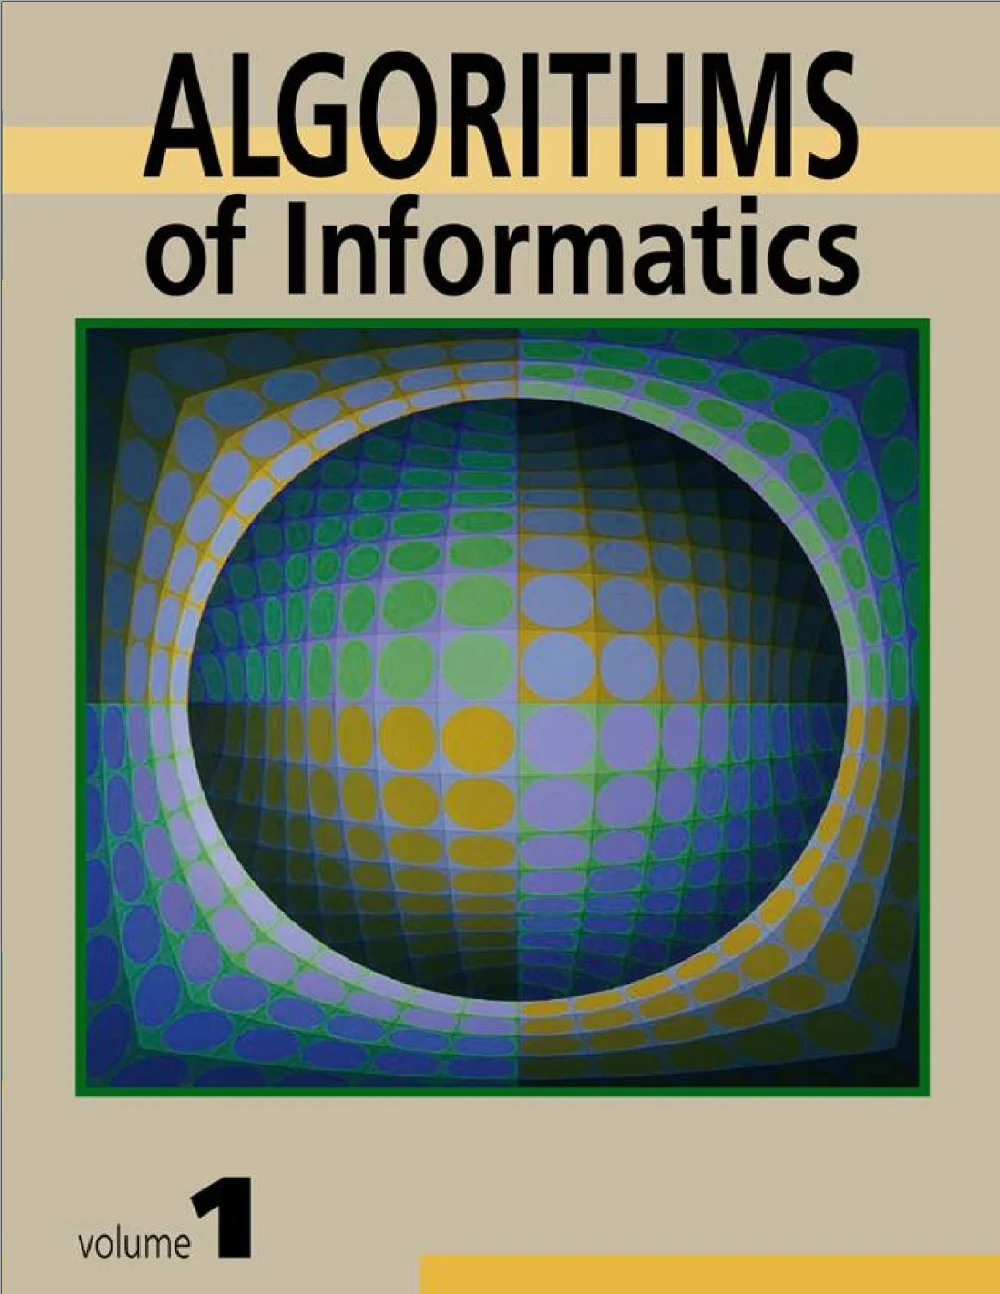 Algorithms of informatics - Vol.1 Foundations